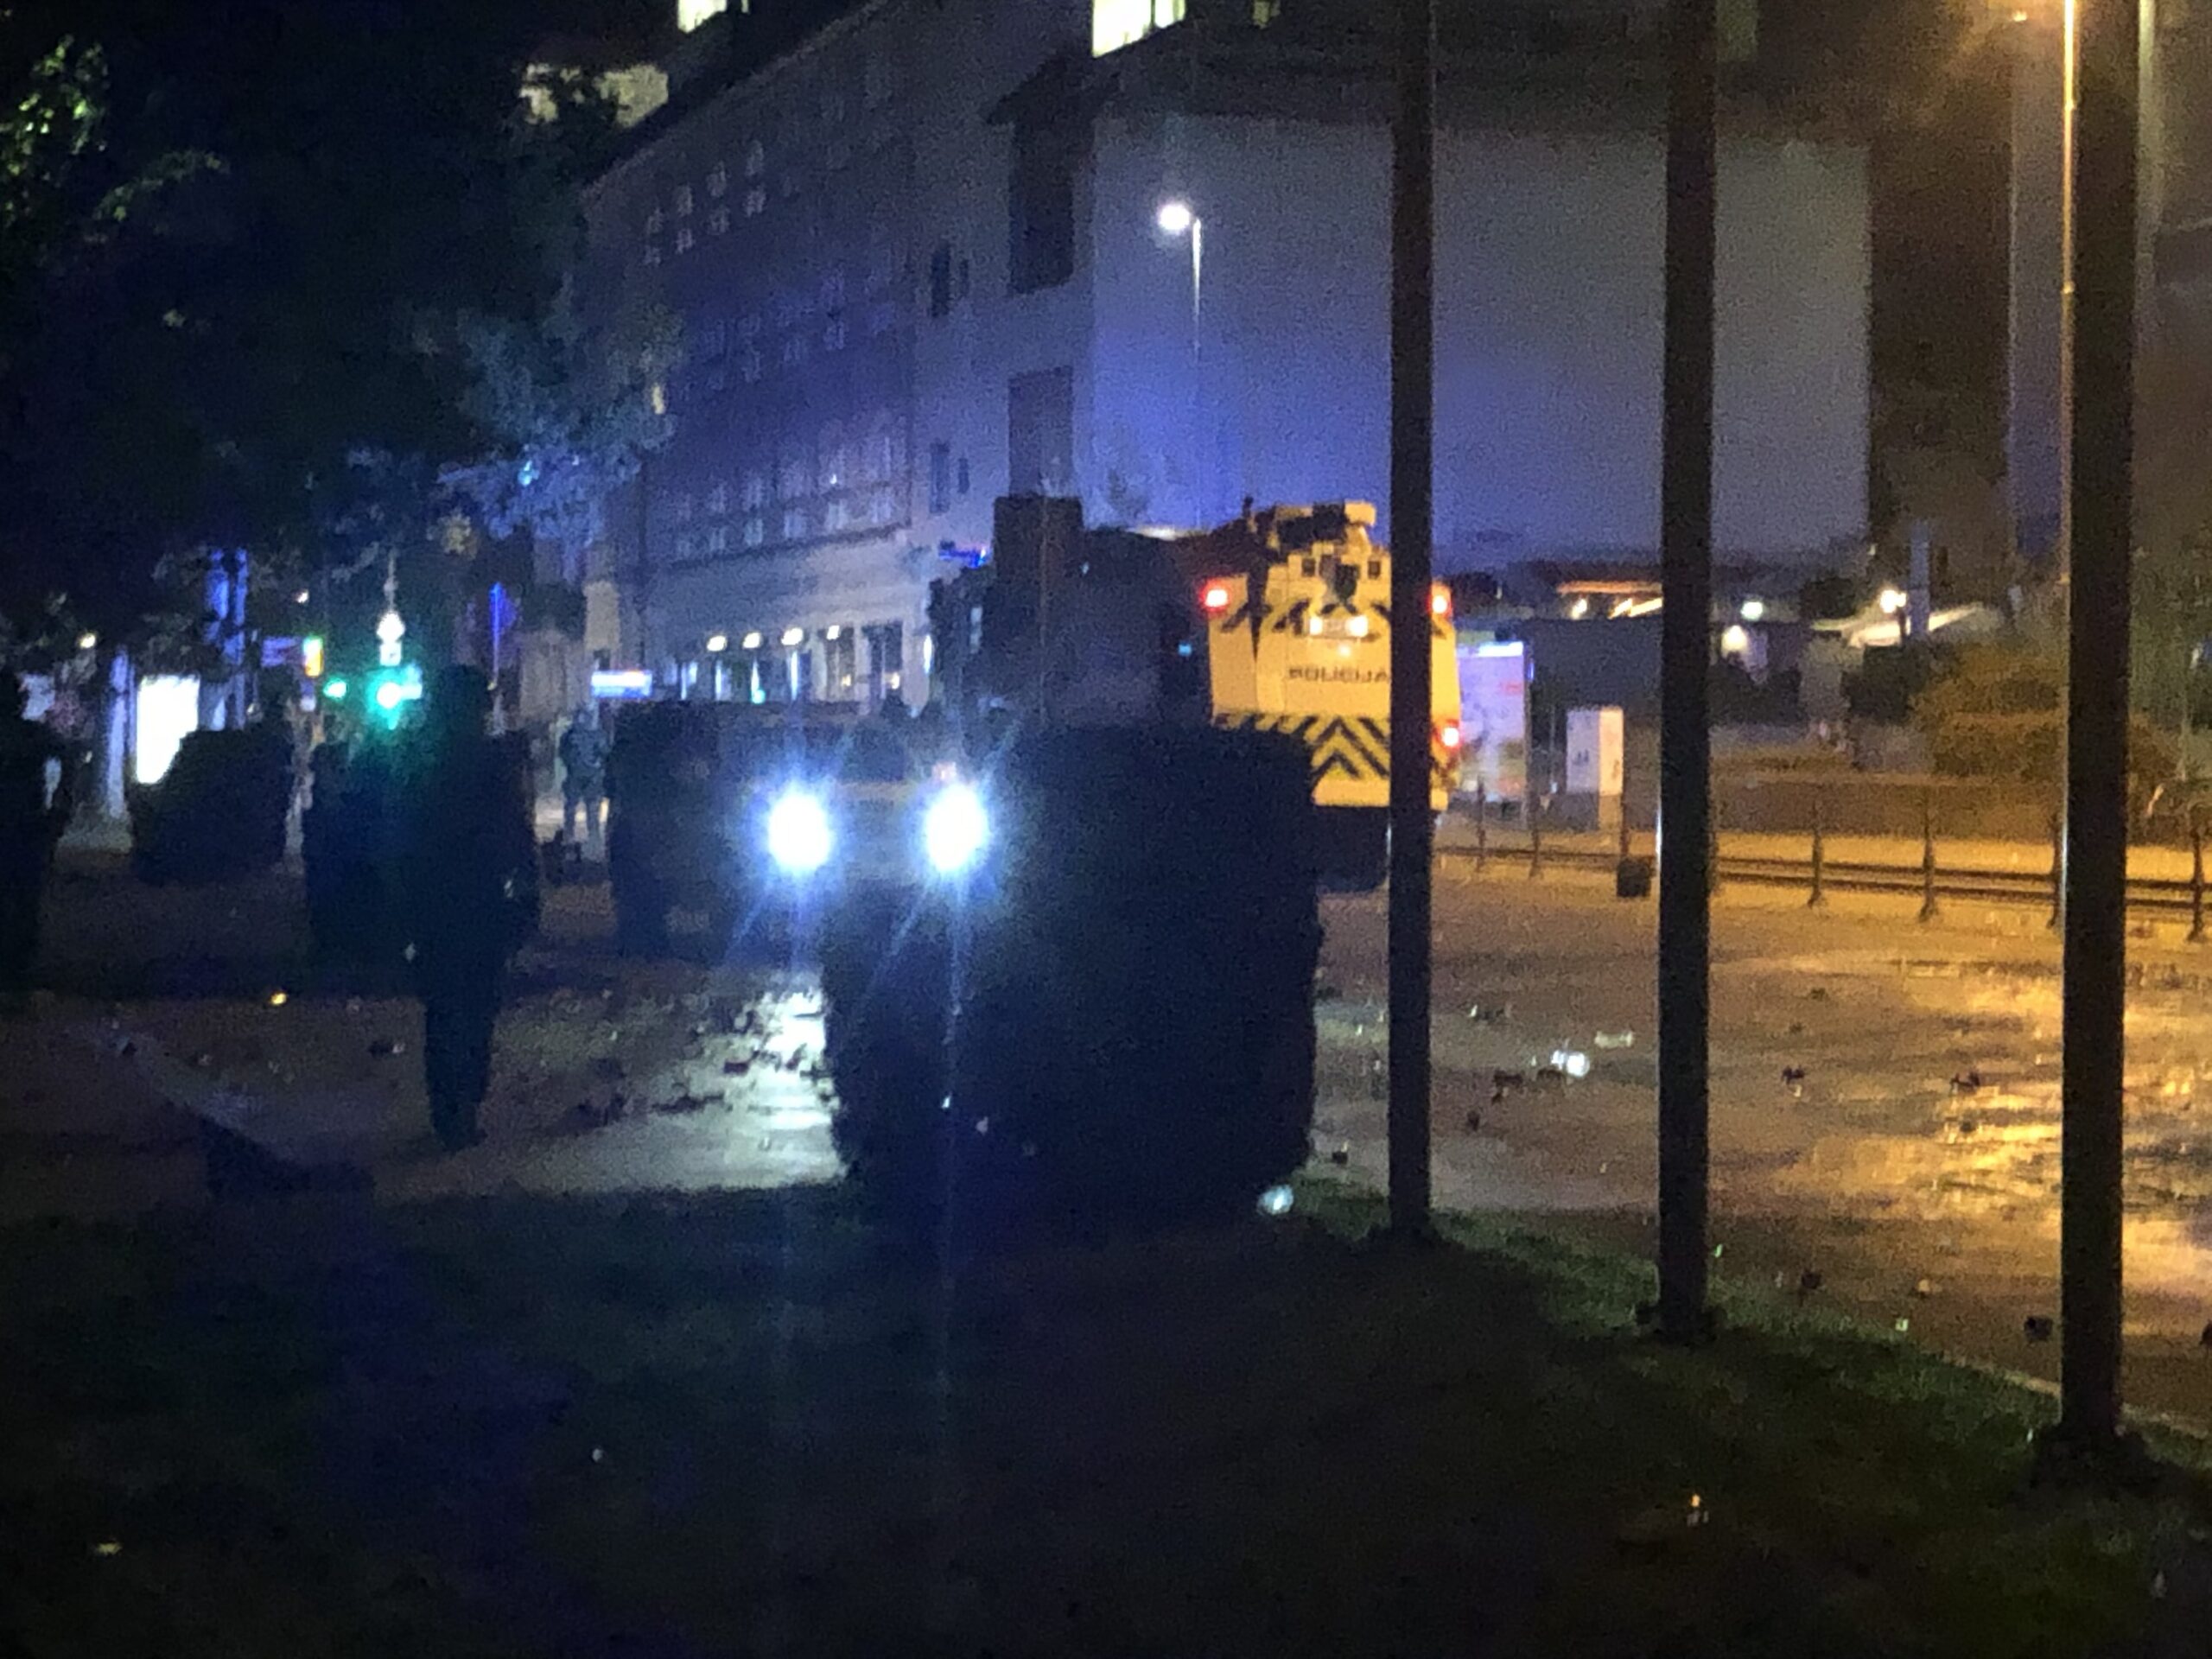 (VIDEO) “Dogajanje naroda” v Ljubljani: Prava ulična vojna med protestniki in policijo pred poslopjem parlamenta